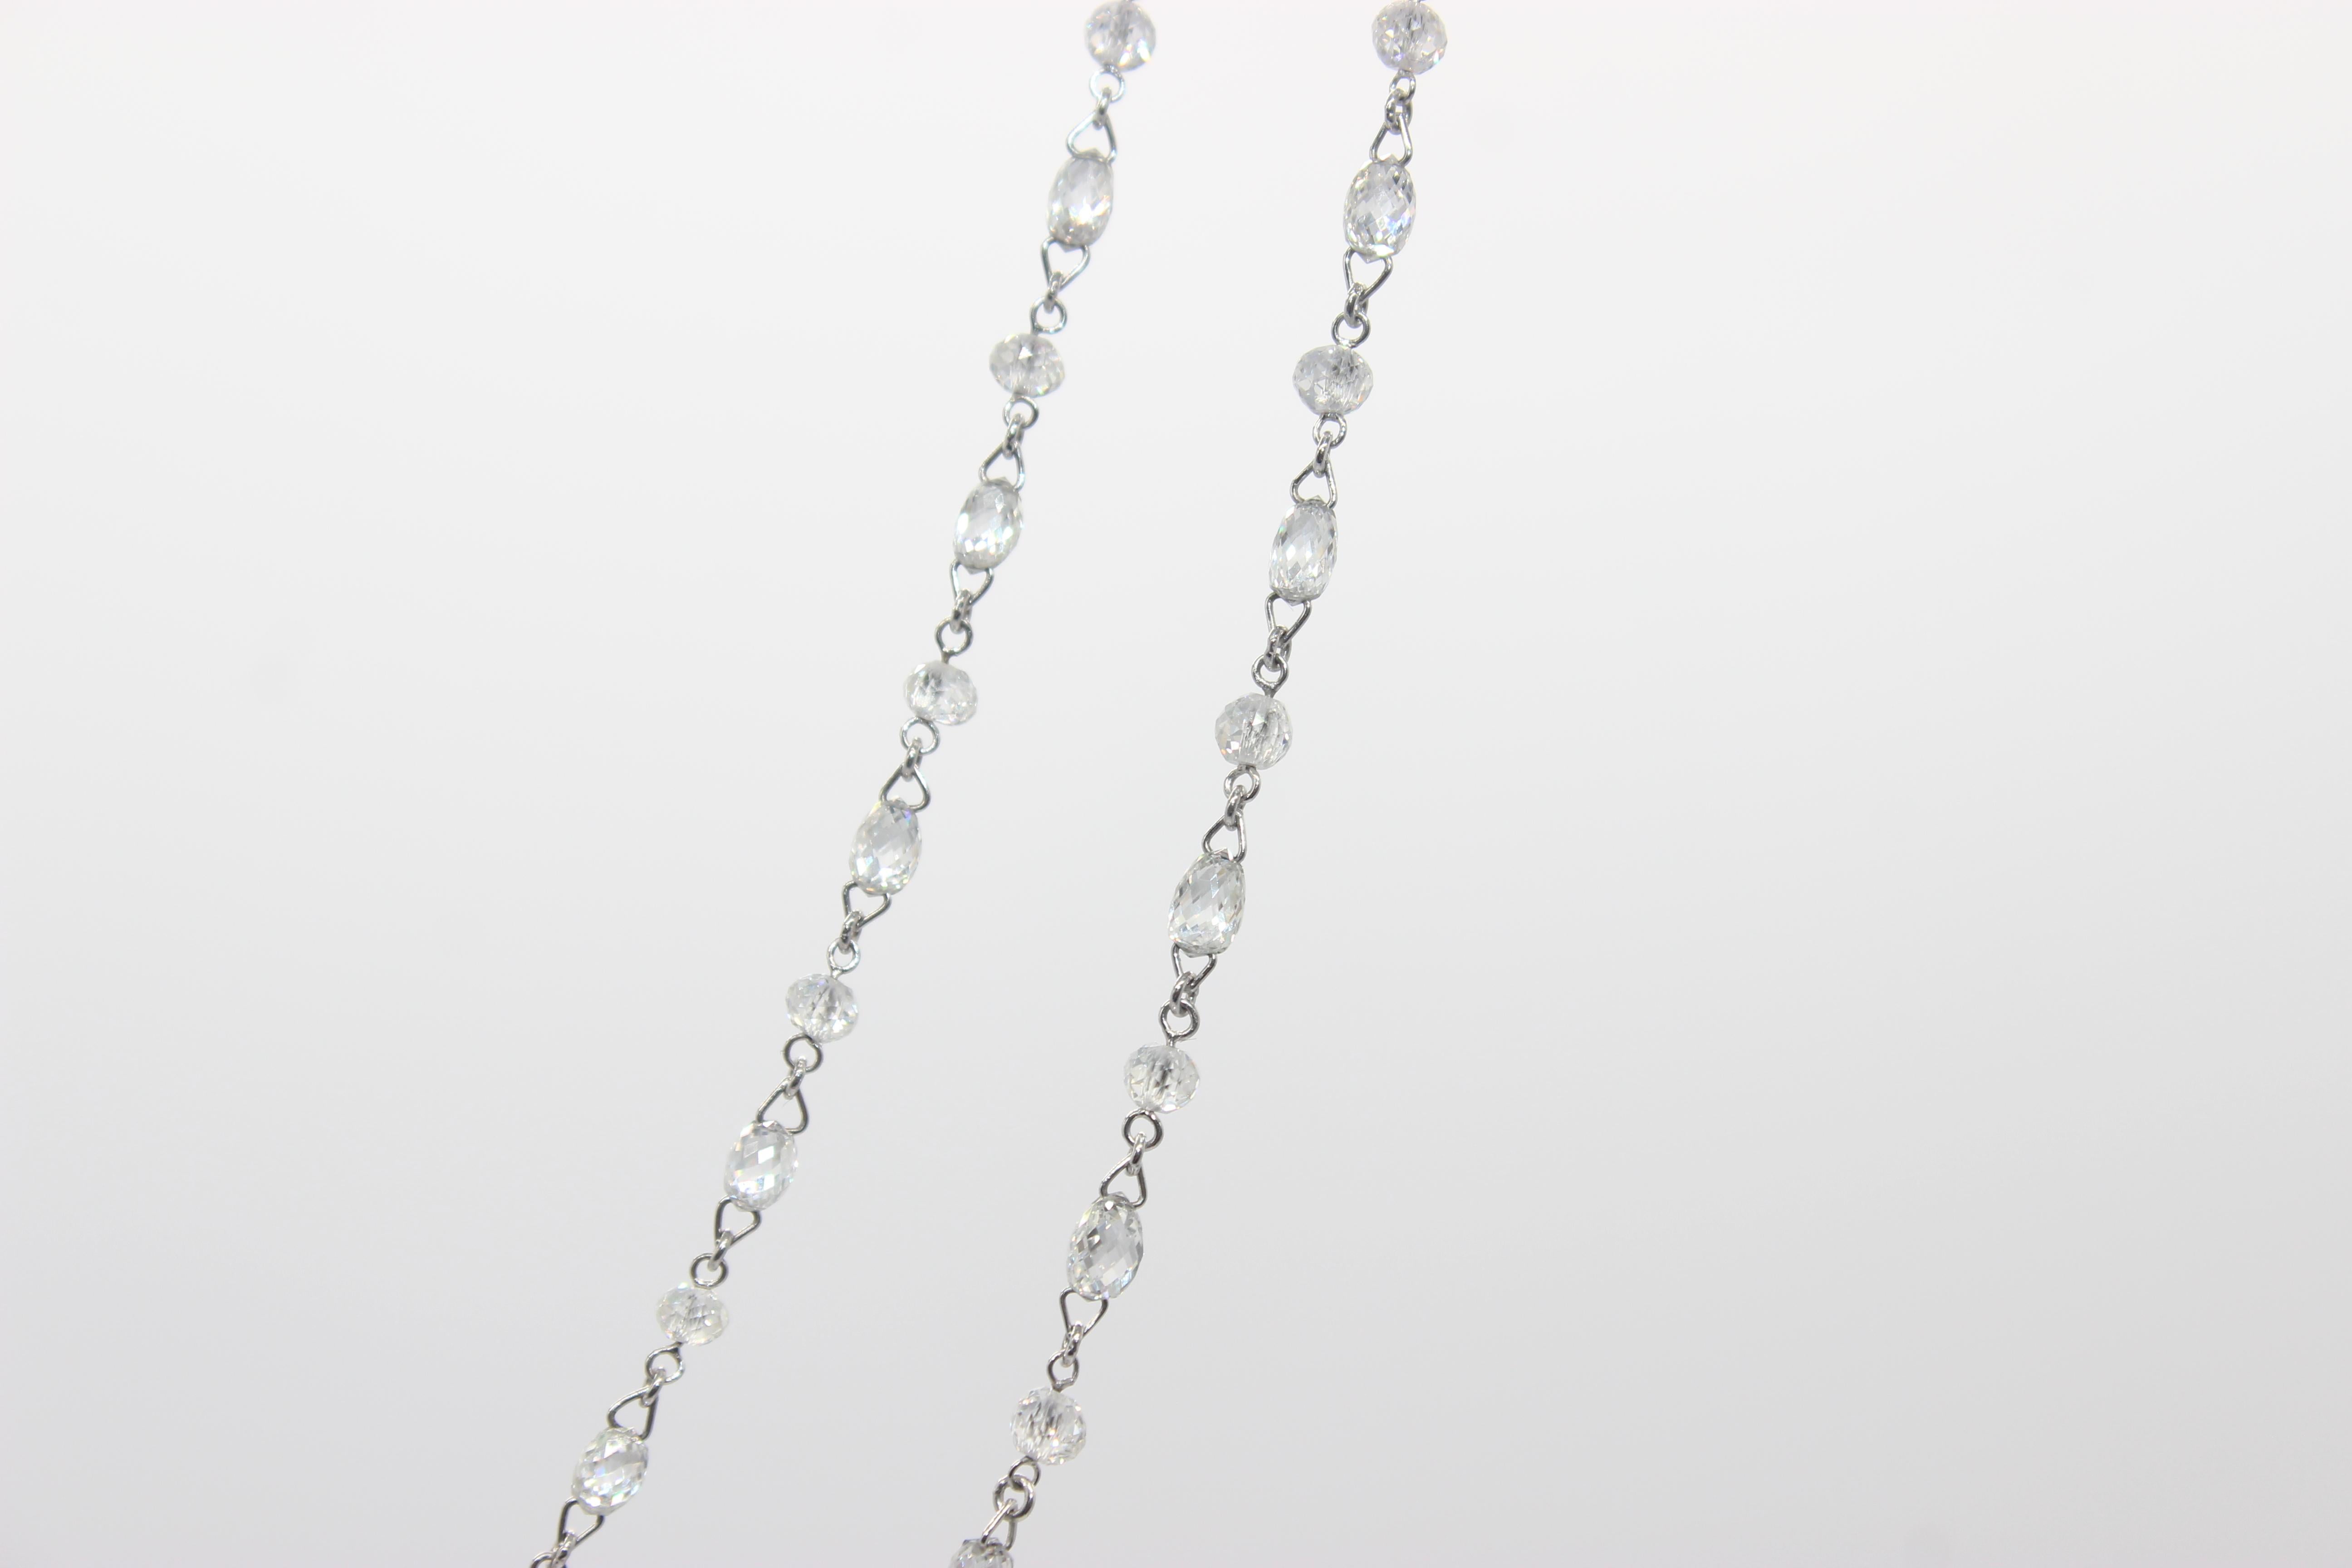 Briolette Cut PANIM 15.29 Carat Diamond Briolette & Beads 18 Karat White Gold Necklace For Sale